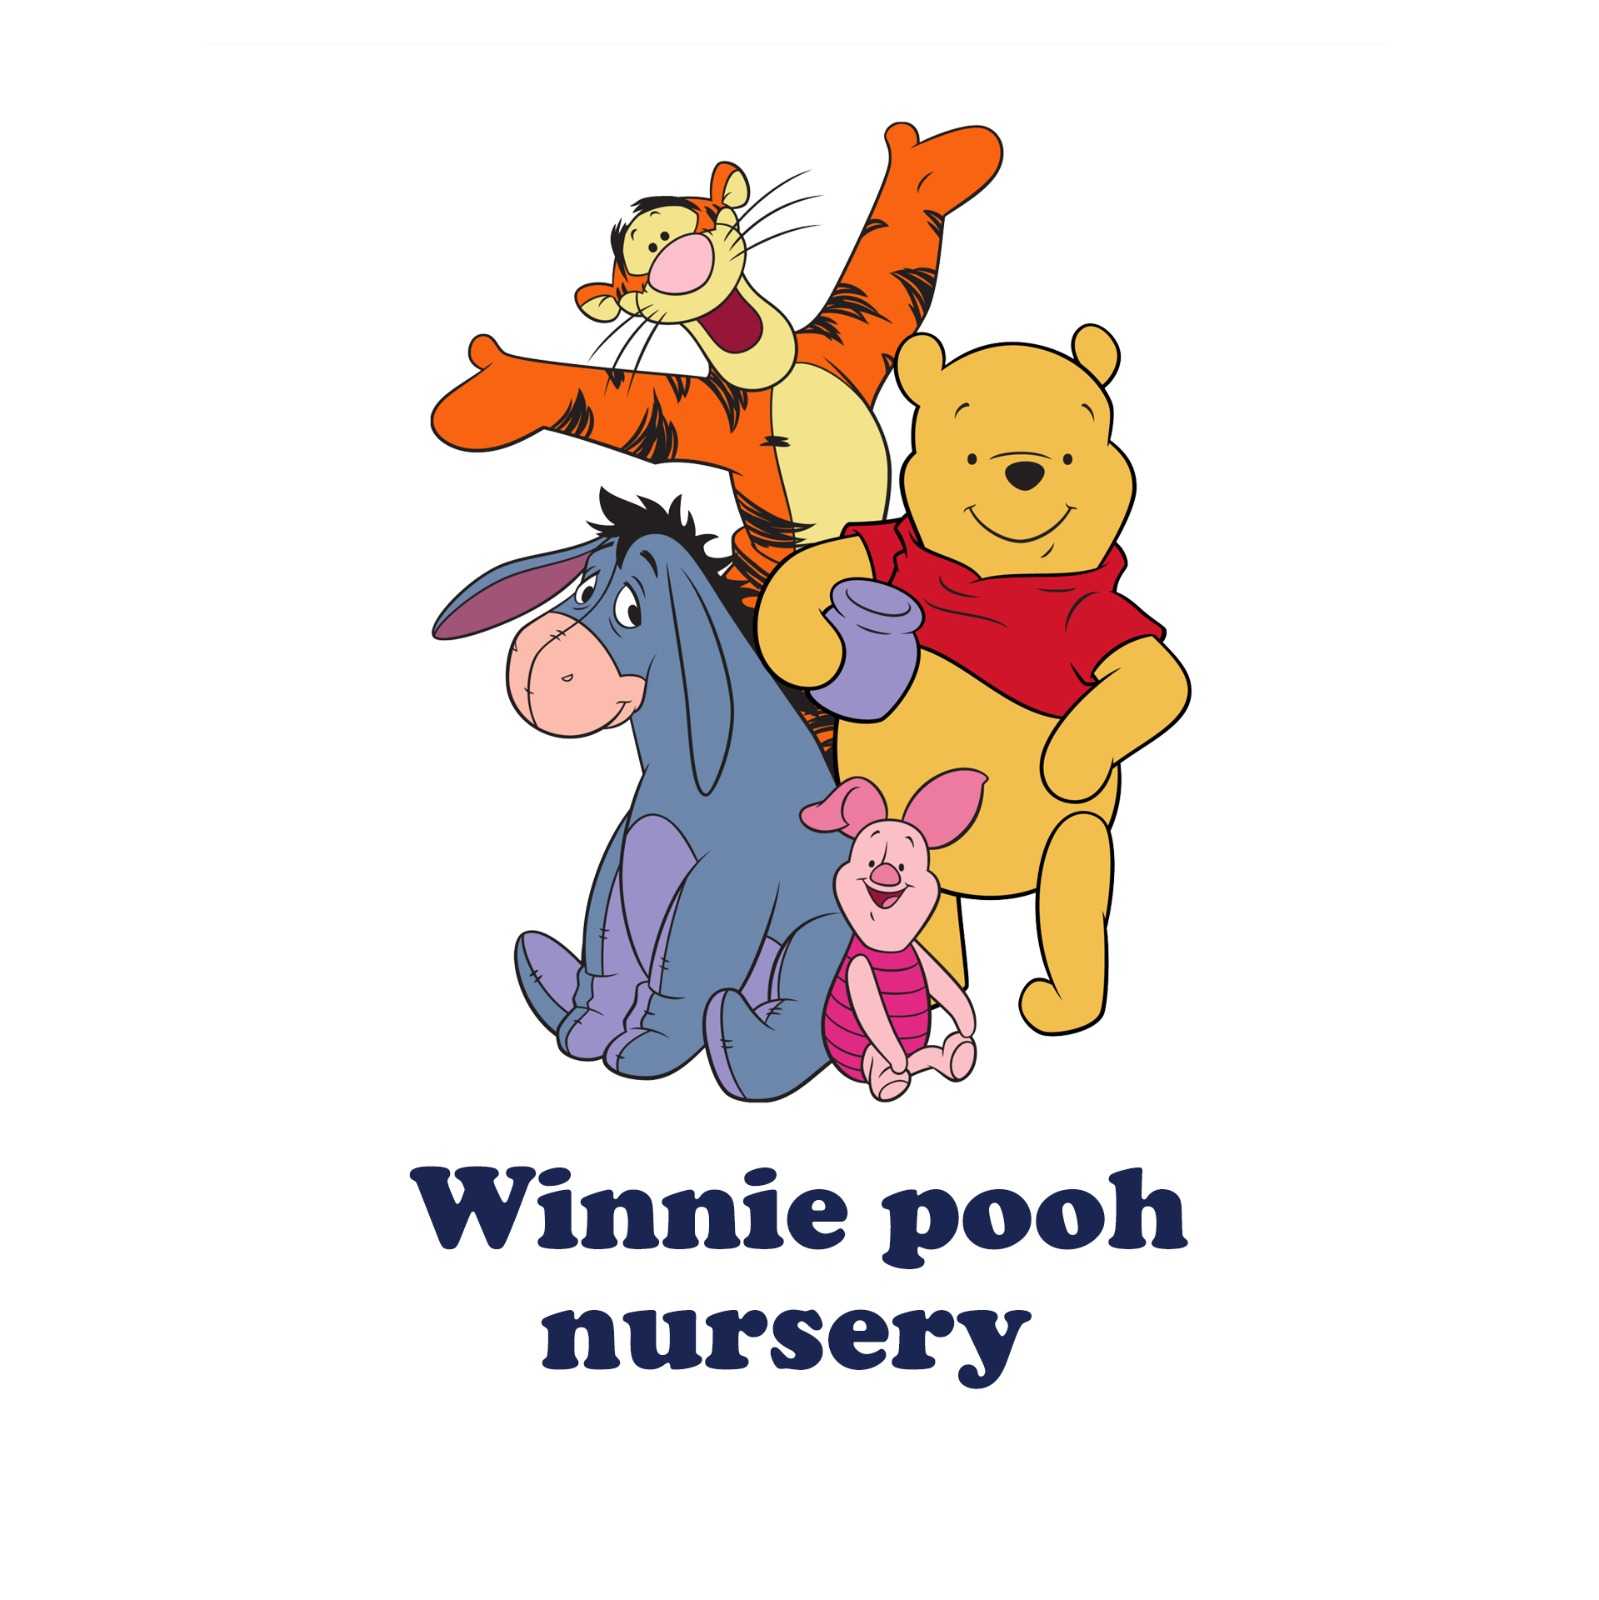 Nursery Winnie pooh